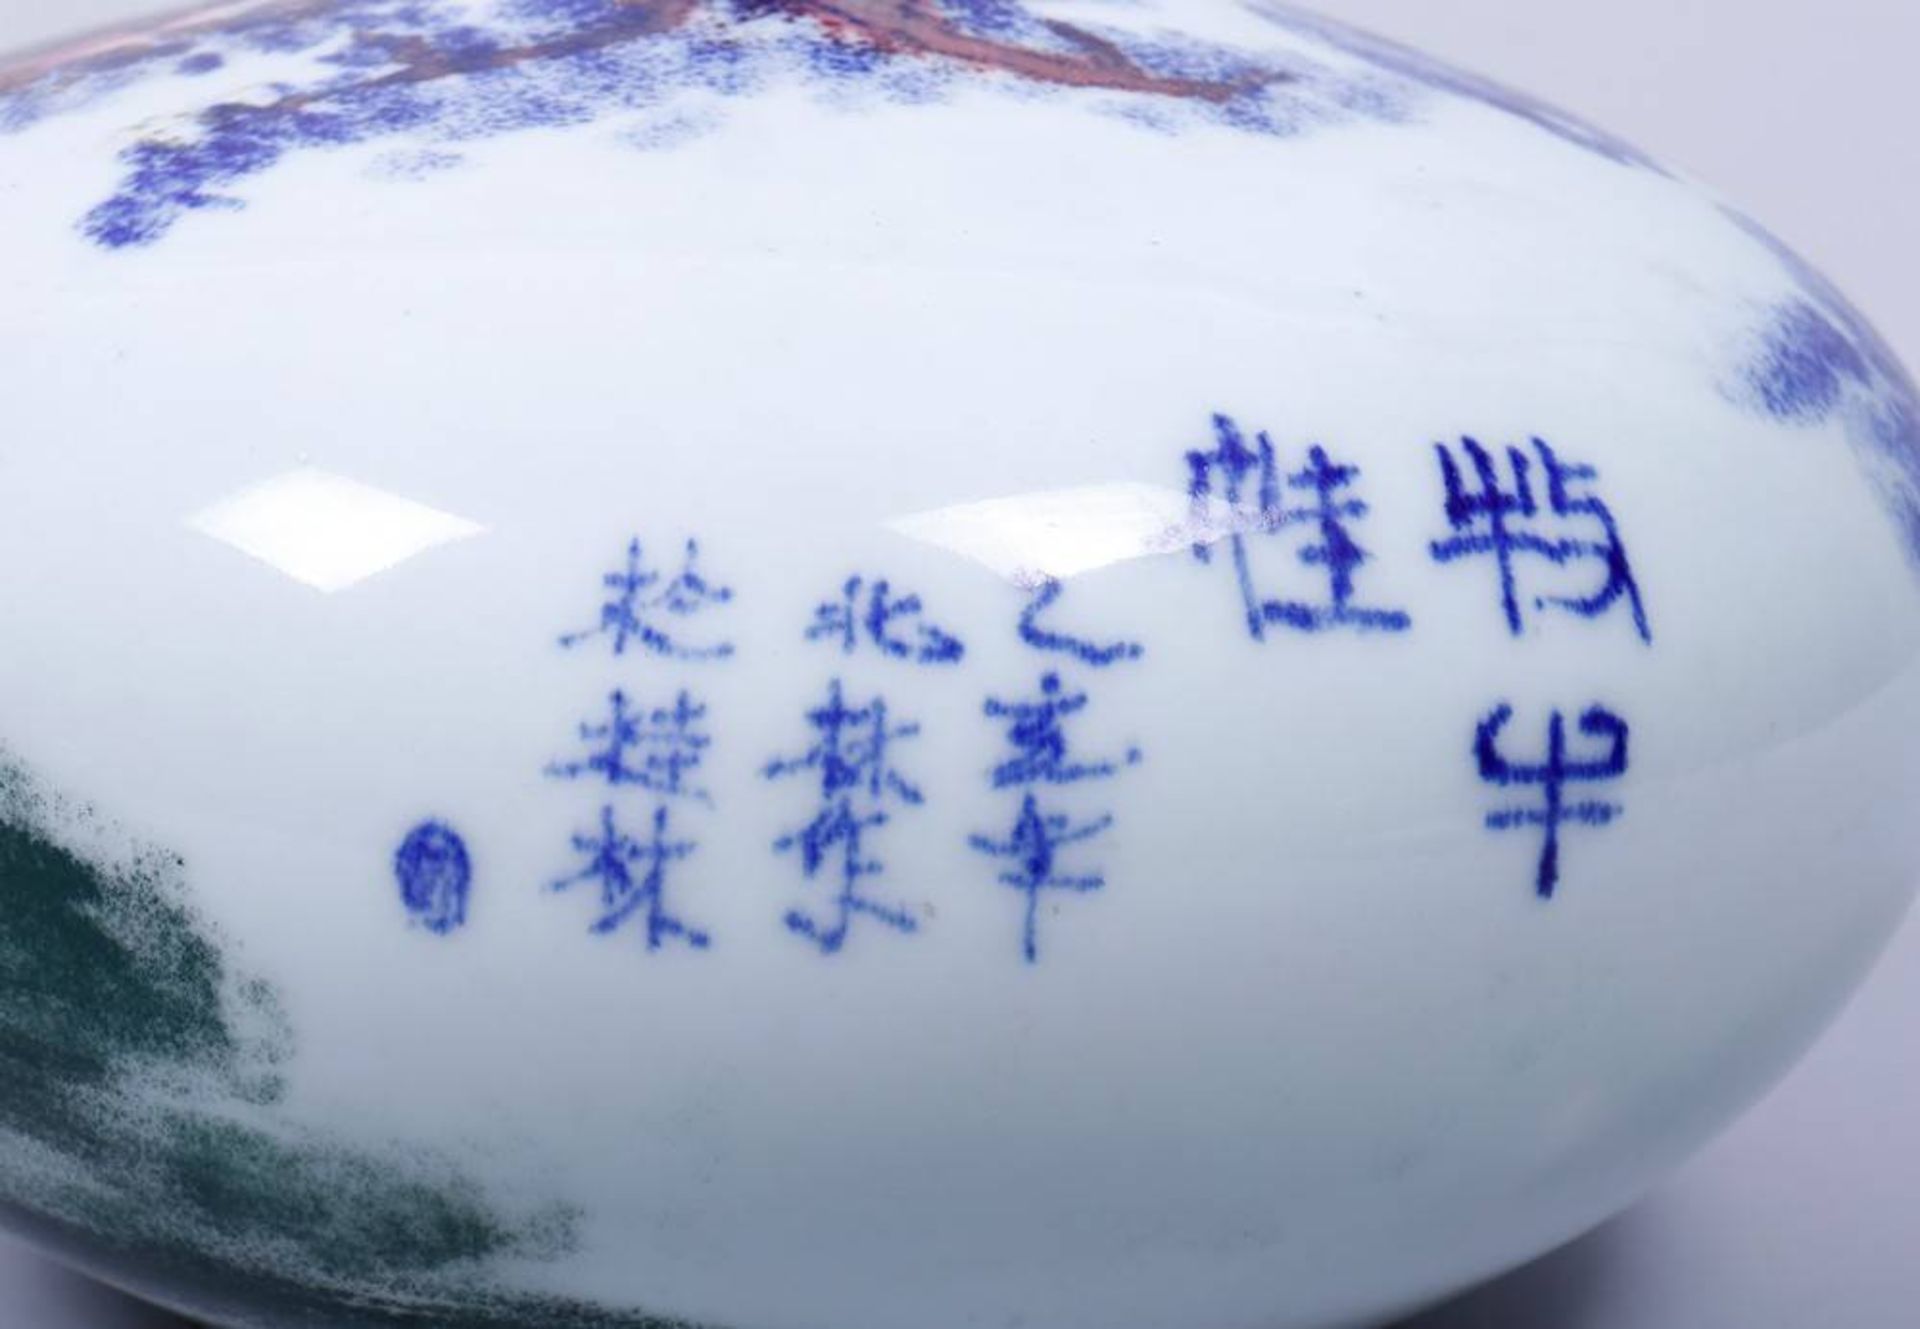 Kugelvase, wohl China, 1. Hälfte 20.Jh. gedrückte Kugelform mit schlankem Hals, Landschaftsdekor in - Bild 3 aus 3